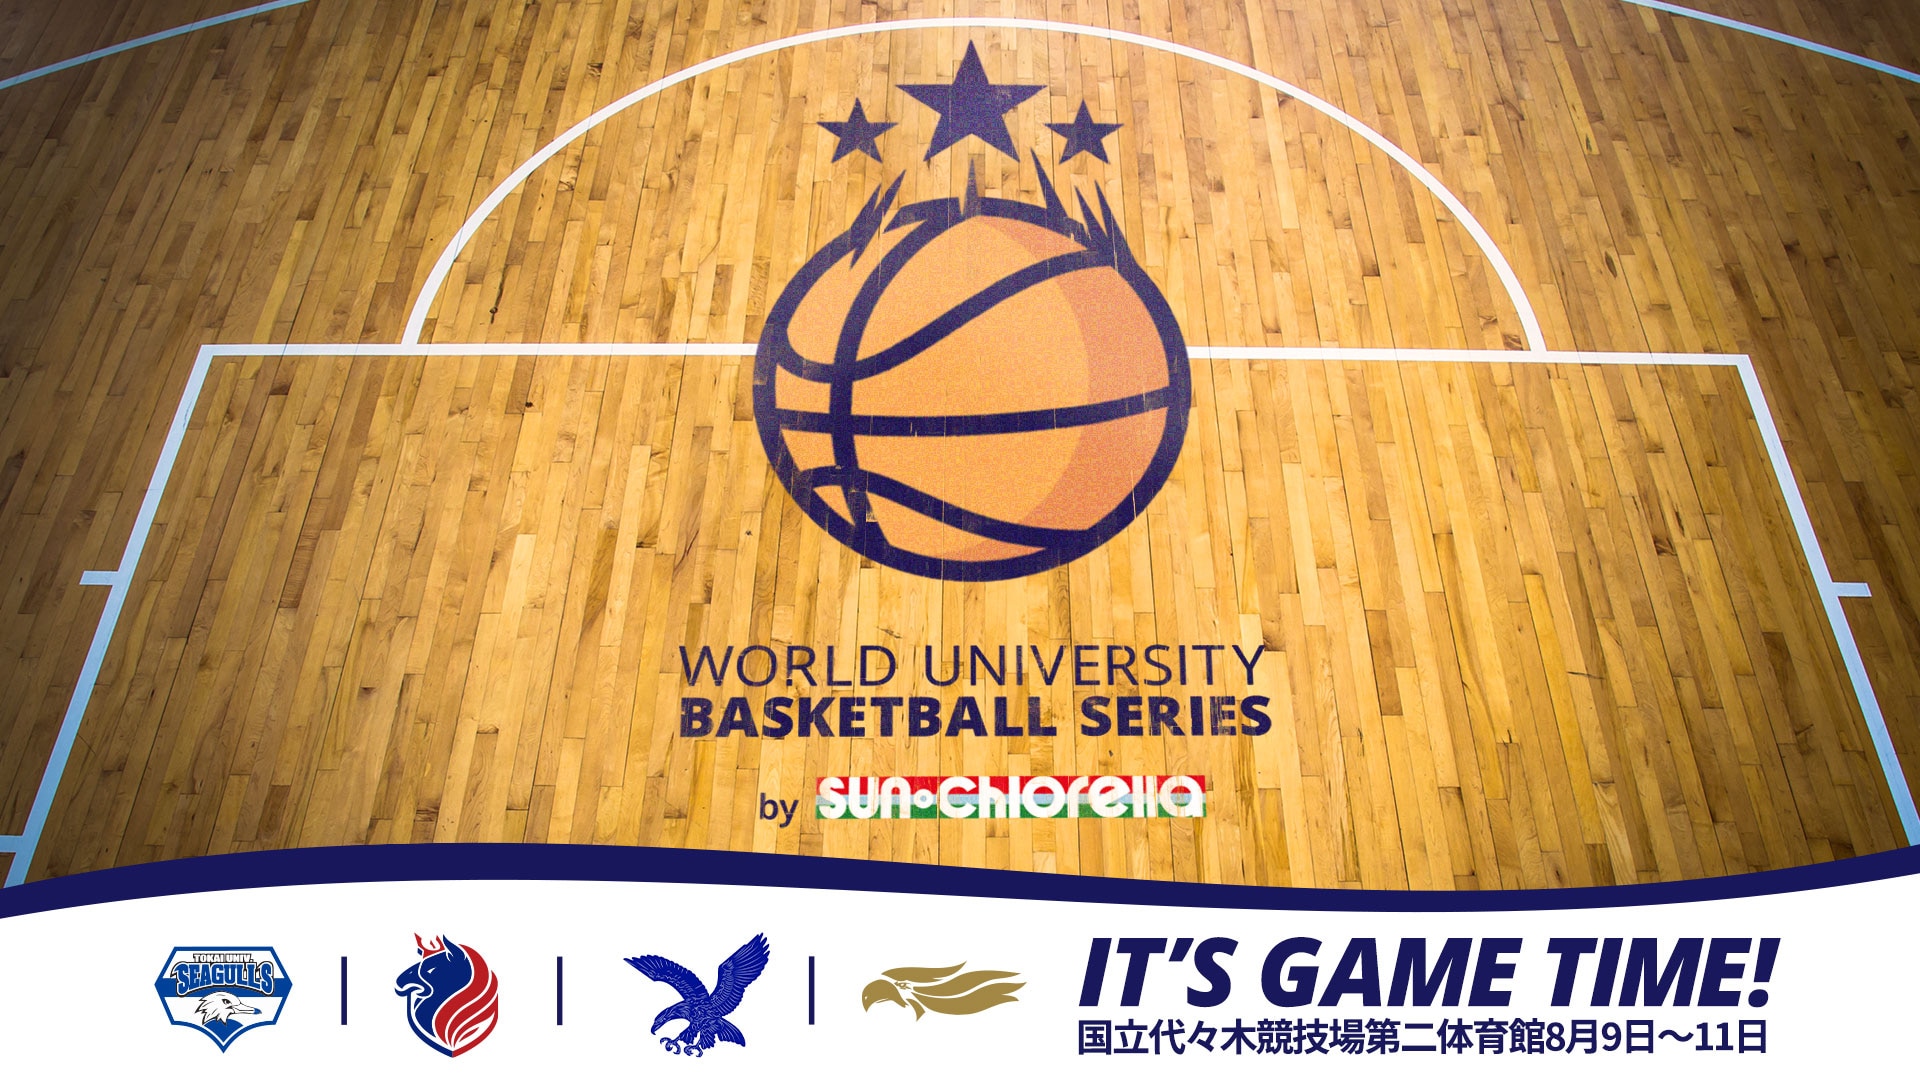 【30％OFF】「World University Basketball Series」の観戦チケットがお得に買えるクーポンコードを配布